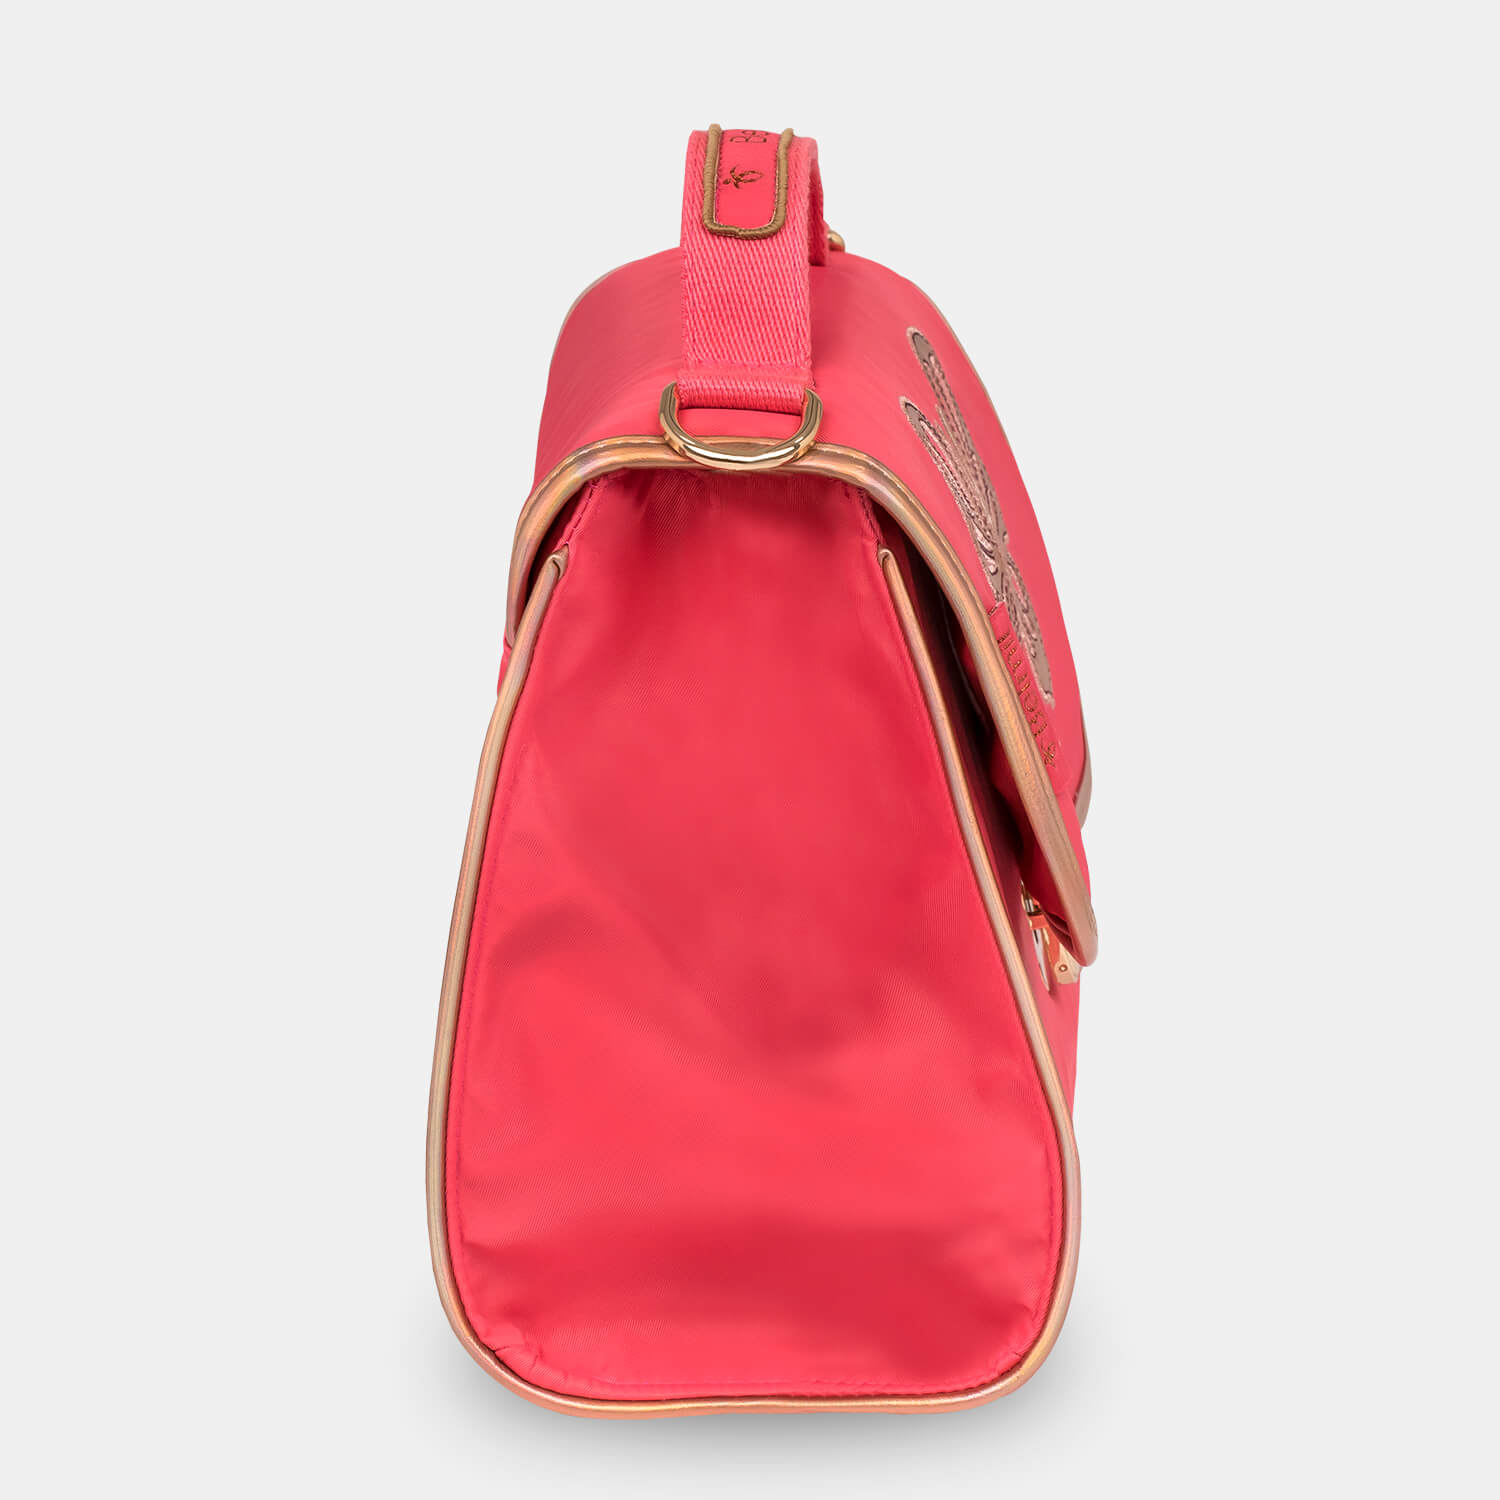 Petite Premium Shoulder bag Coral with GRATIS Gym bag